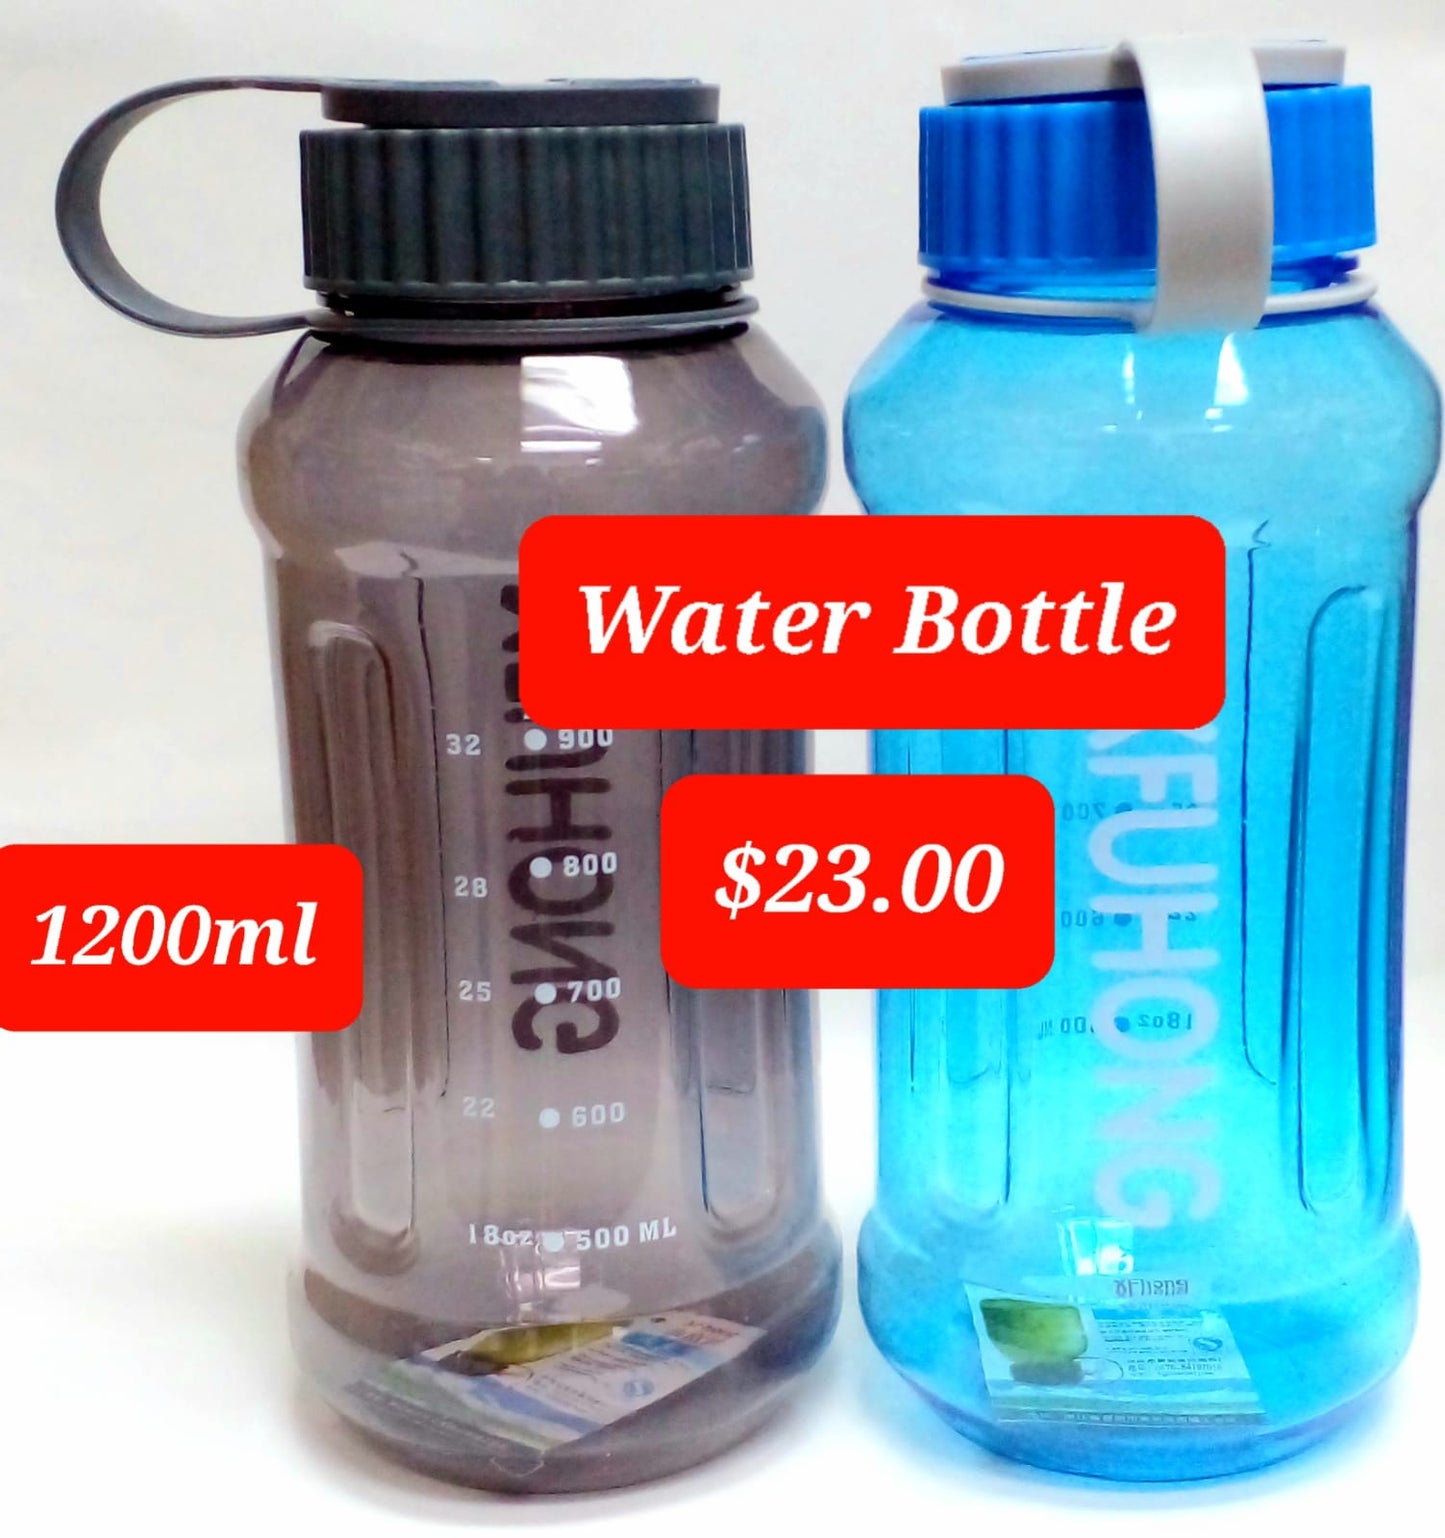 1200ml Water bottle